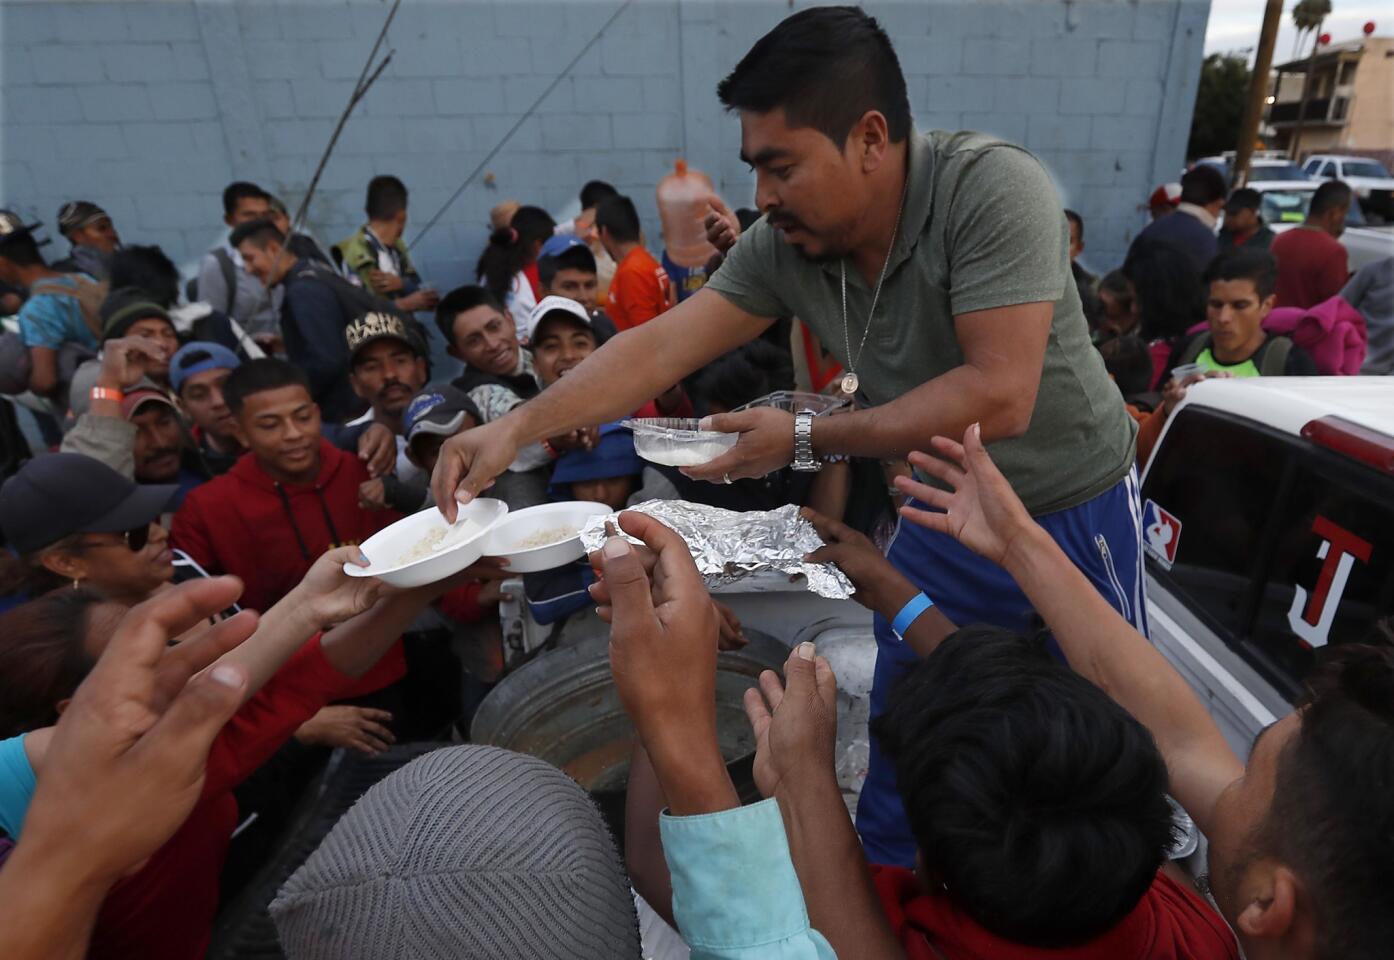 Migrant caravan arrives in Tijuana